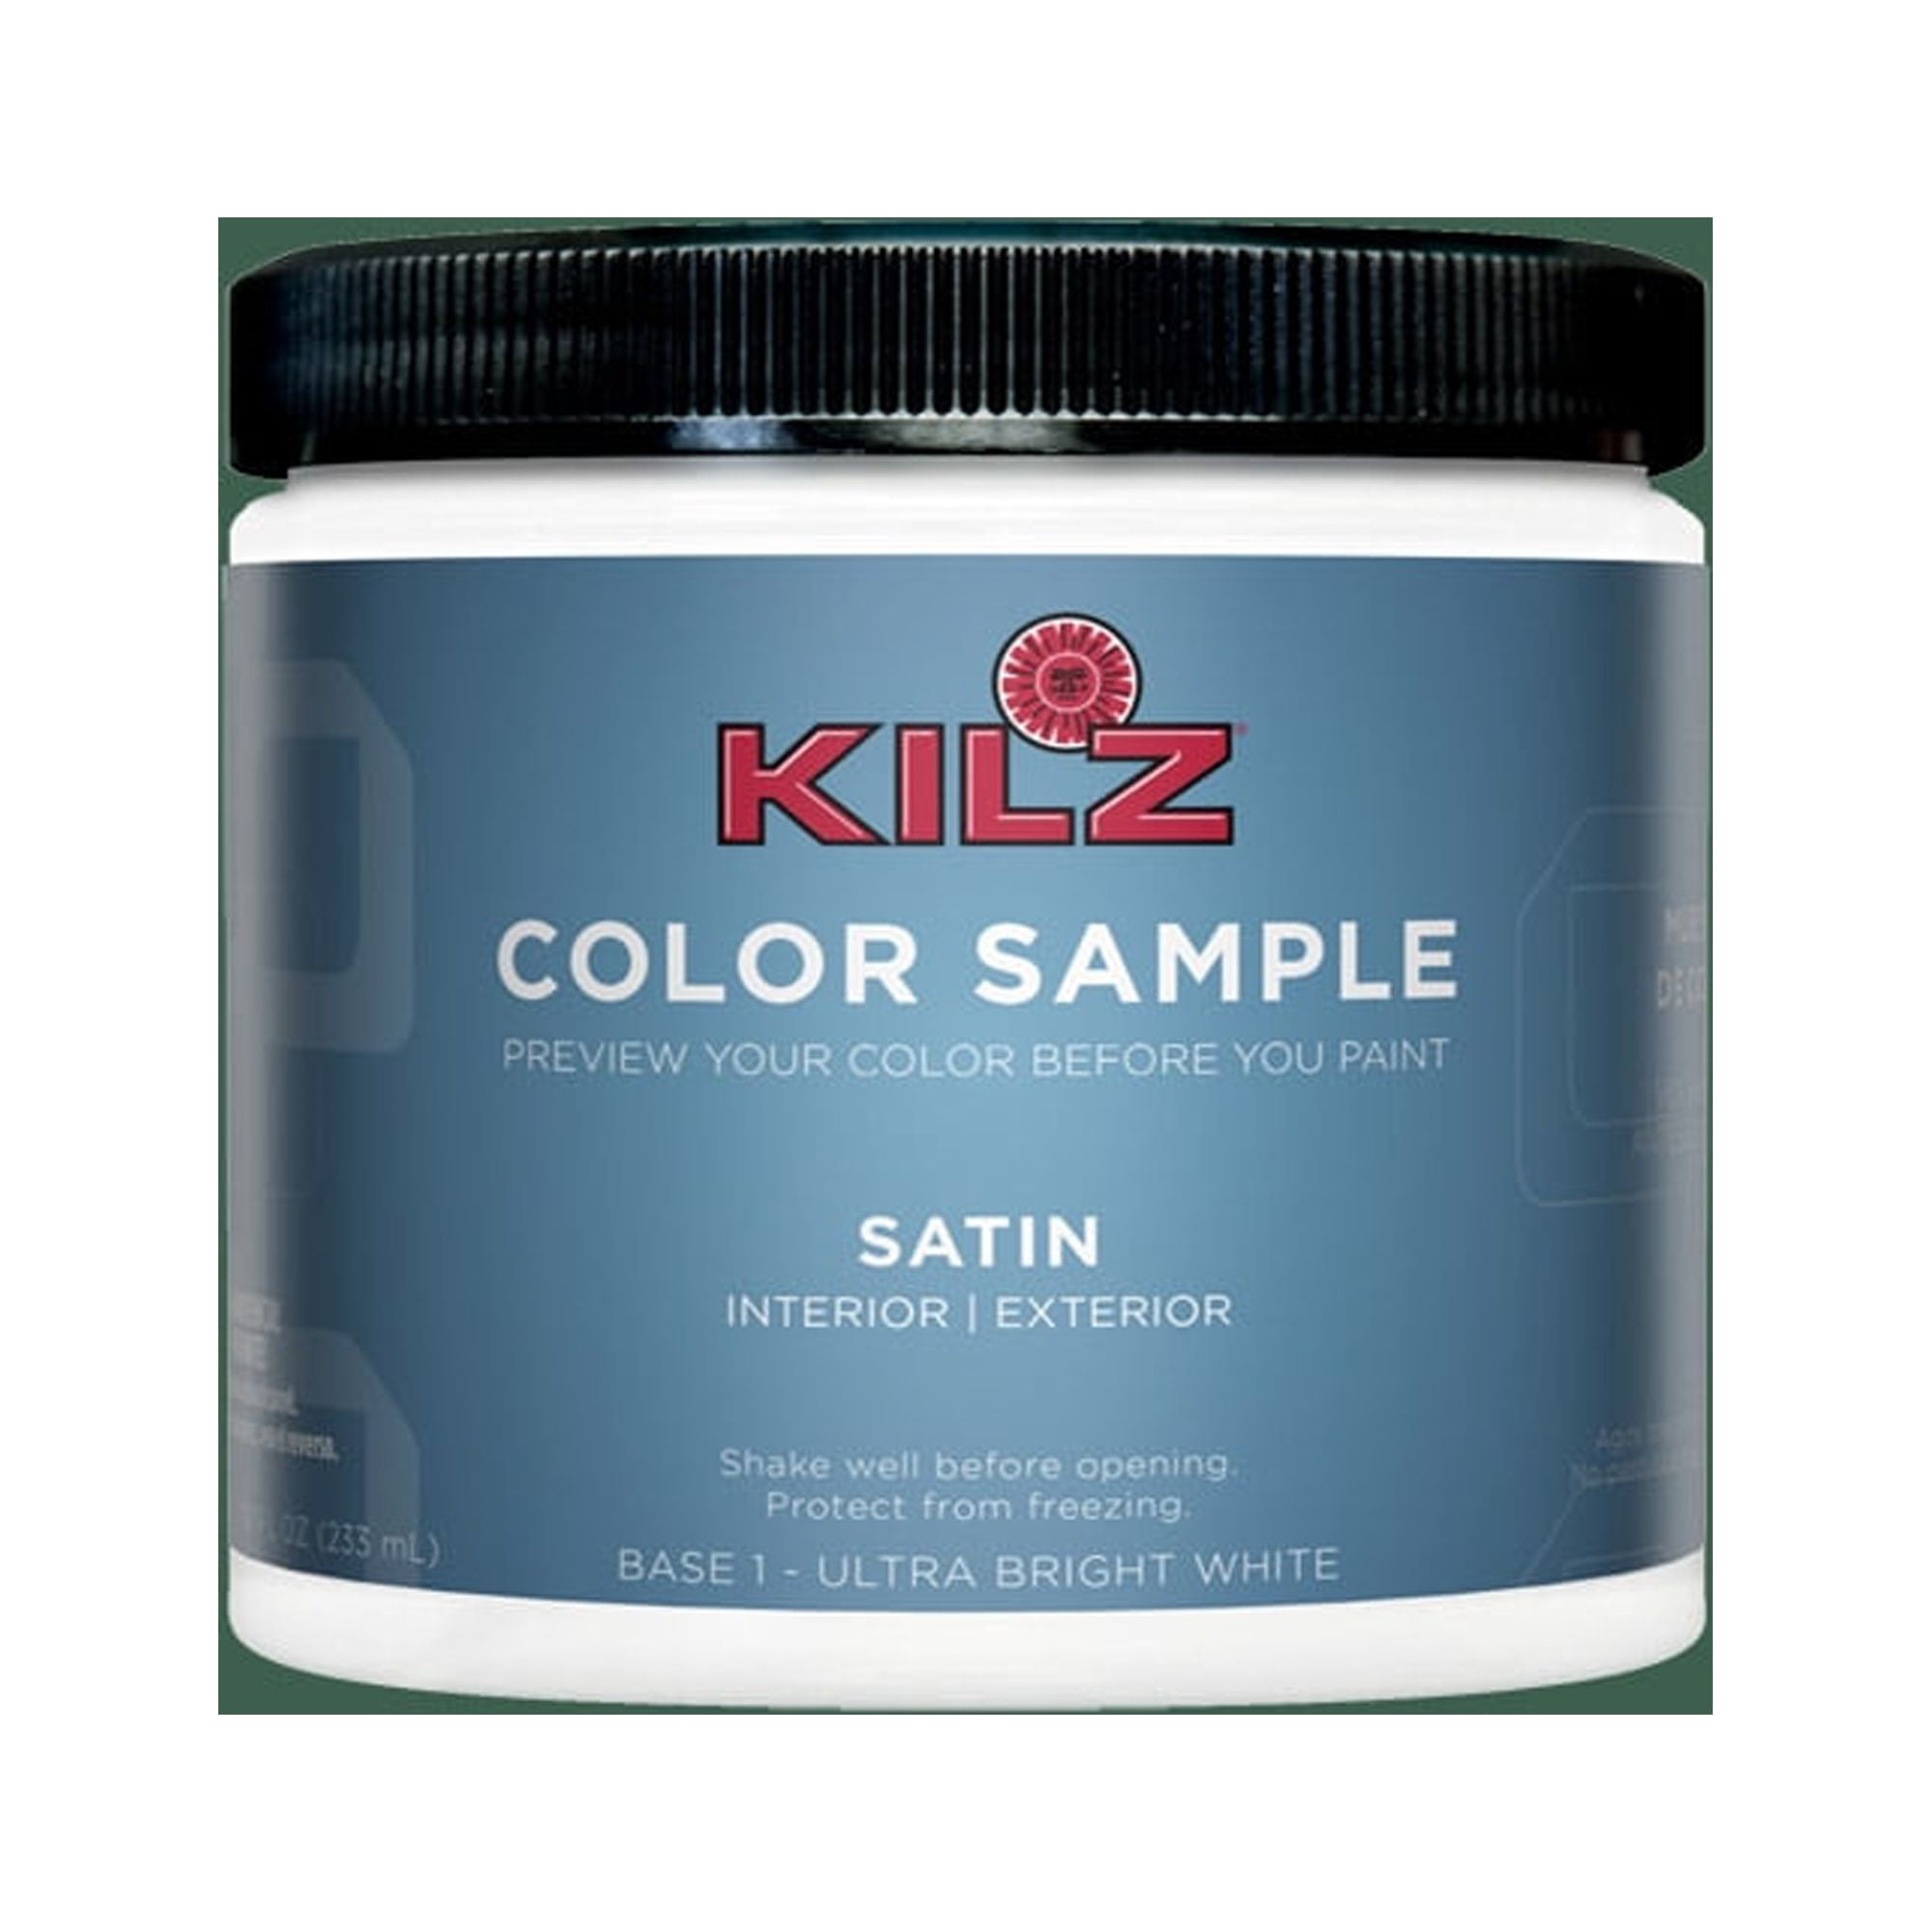 KILZ TRIBUTE Paint & Primer, Interior, Semi-Gloss, Ultra Bright